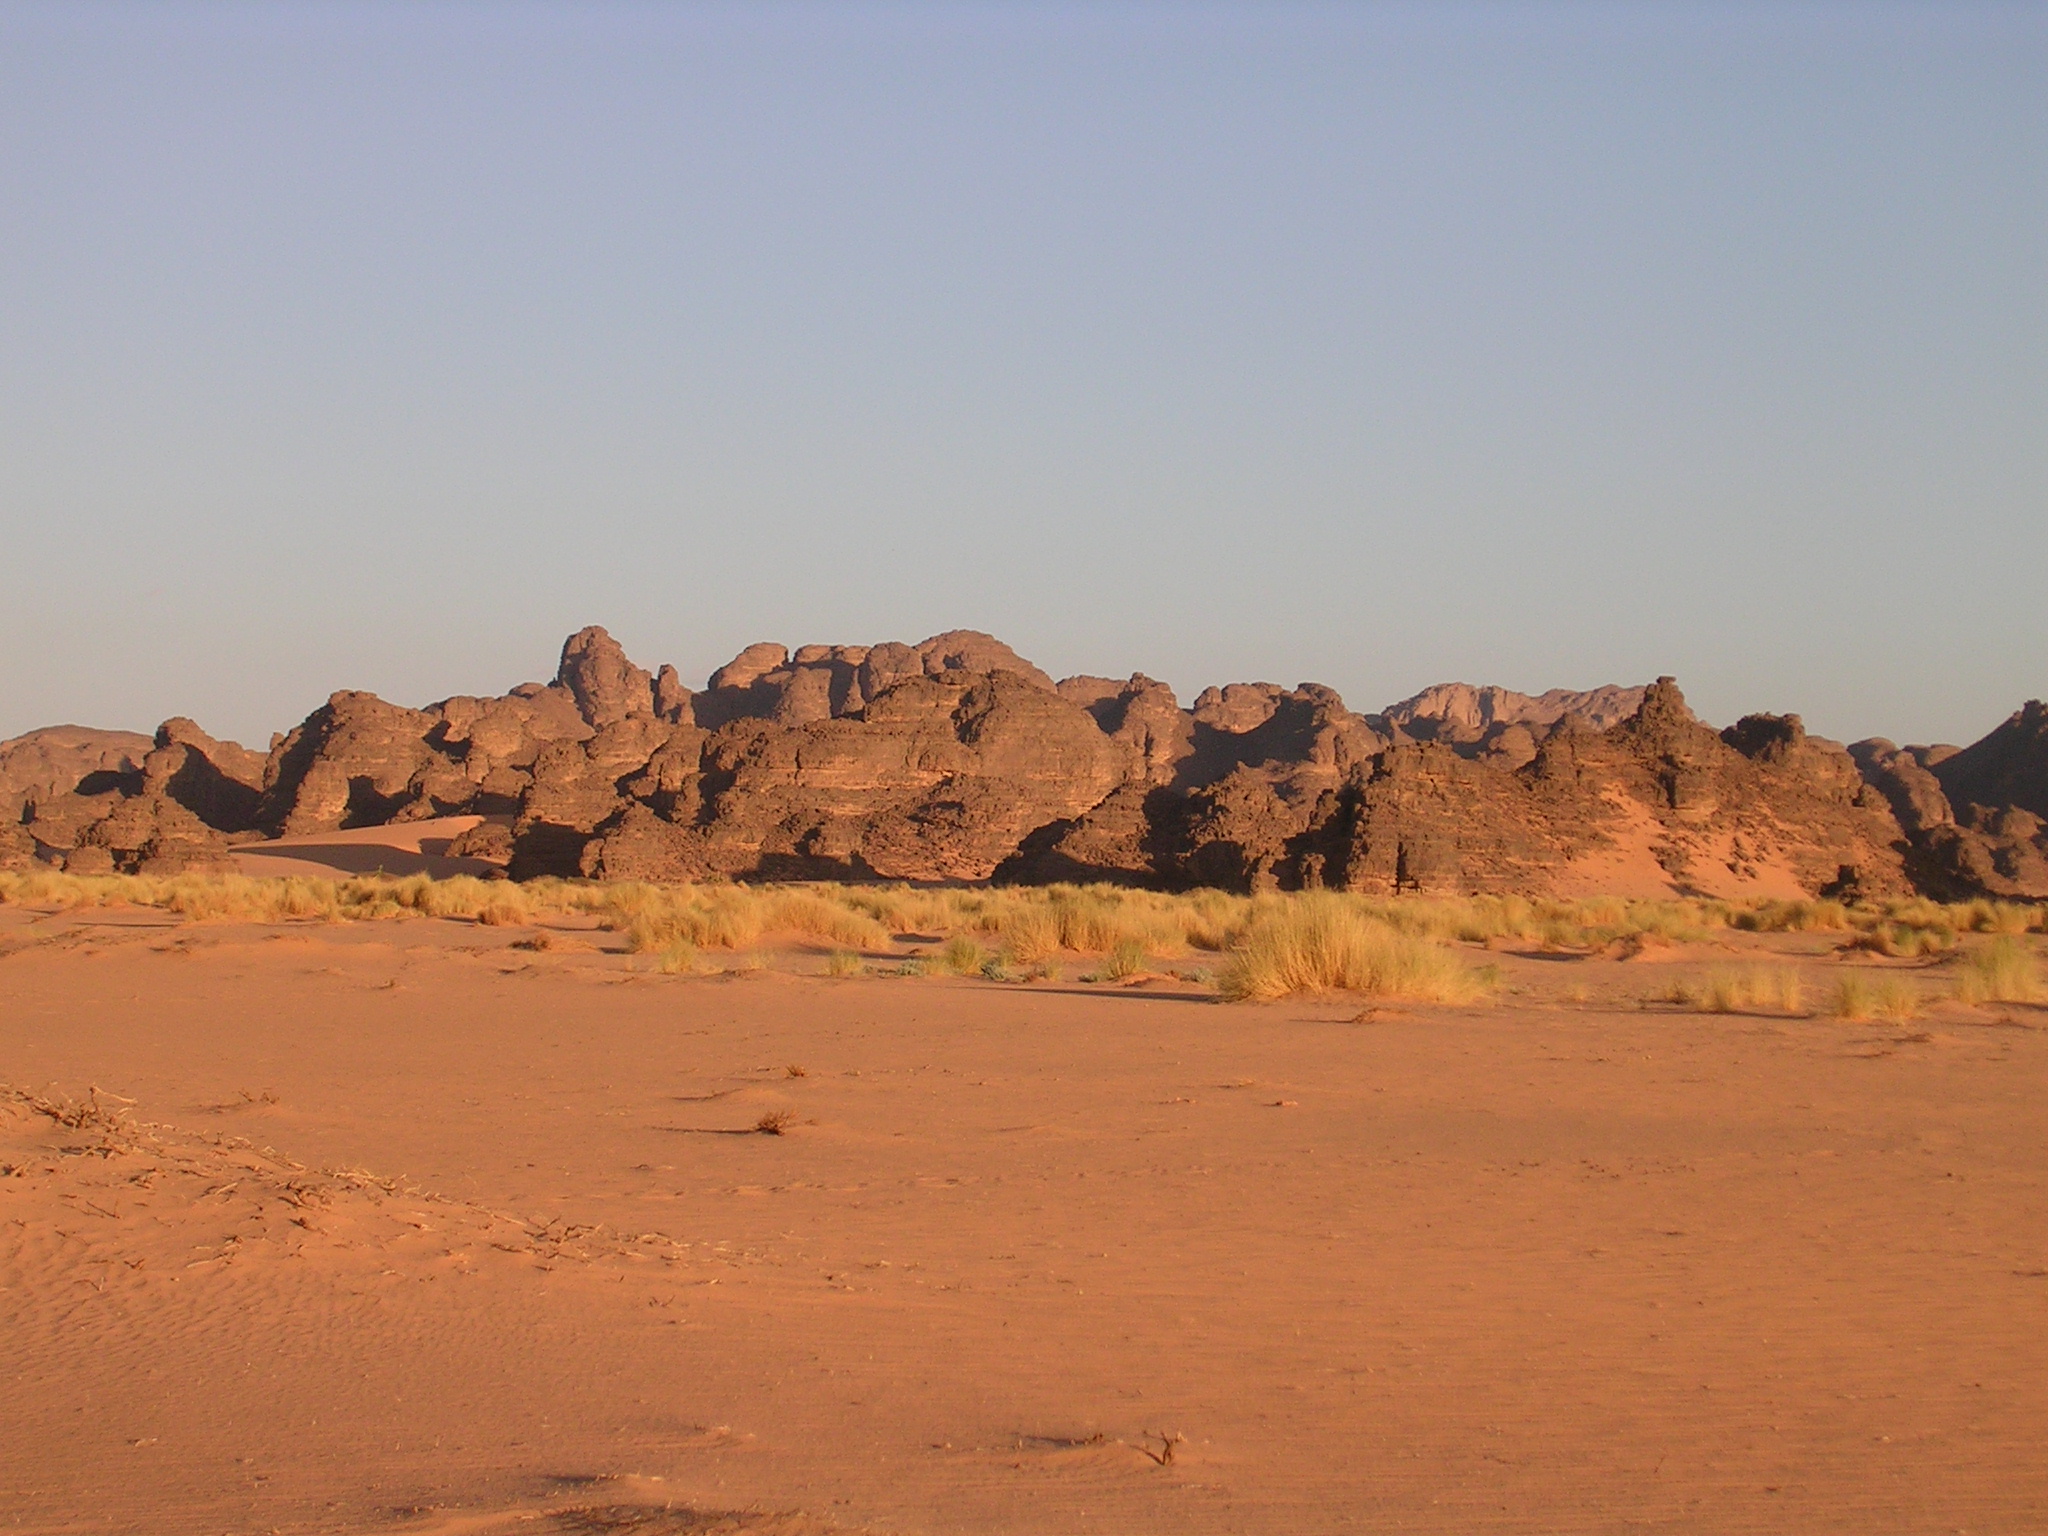 désert du Tasili, au sud de
l'algérie